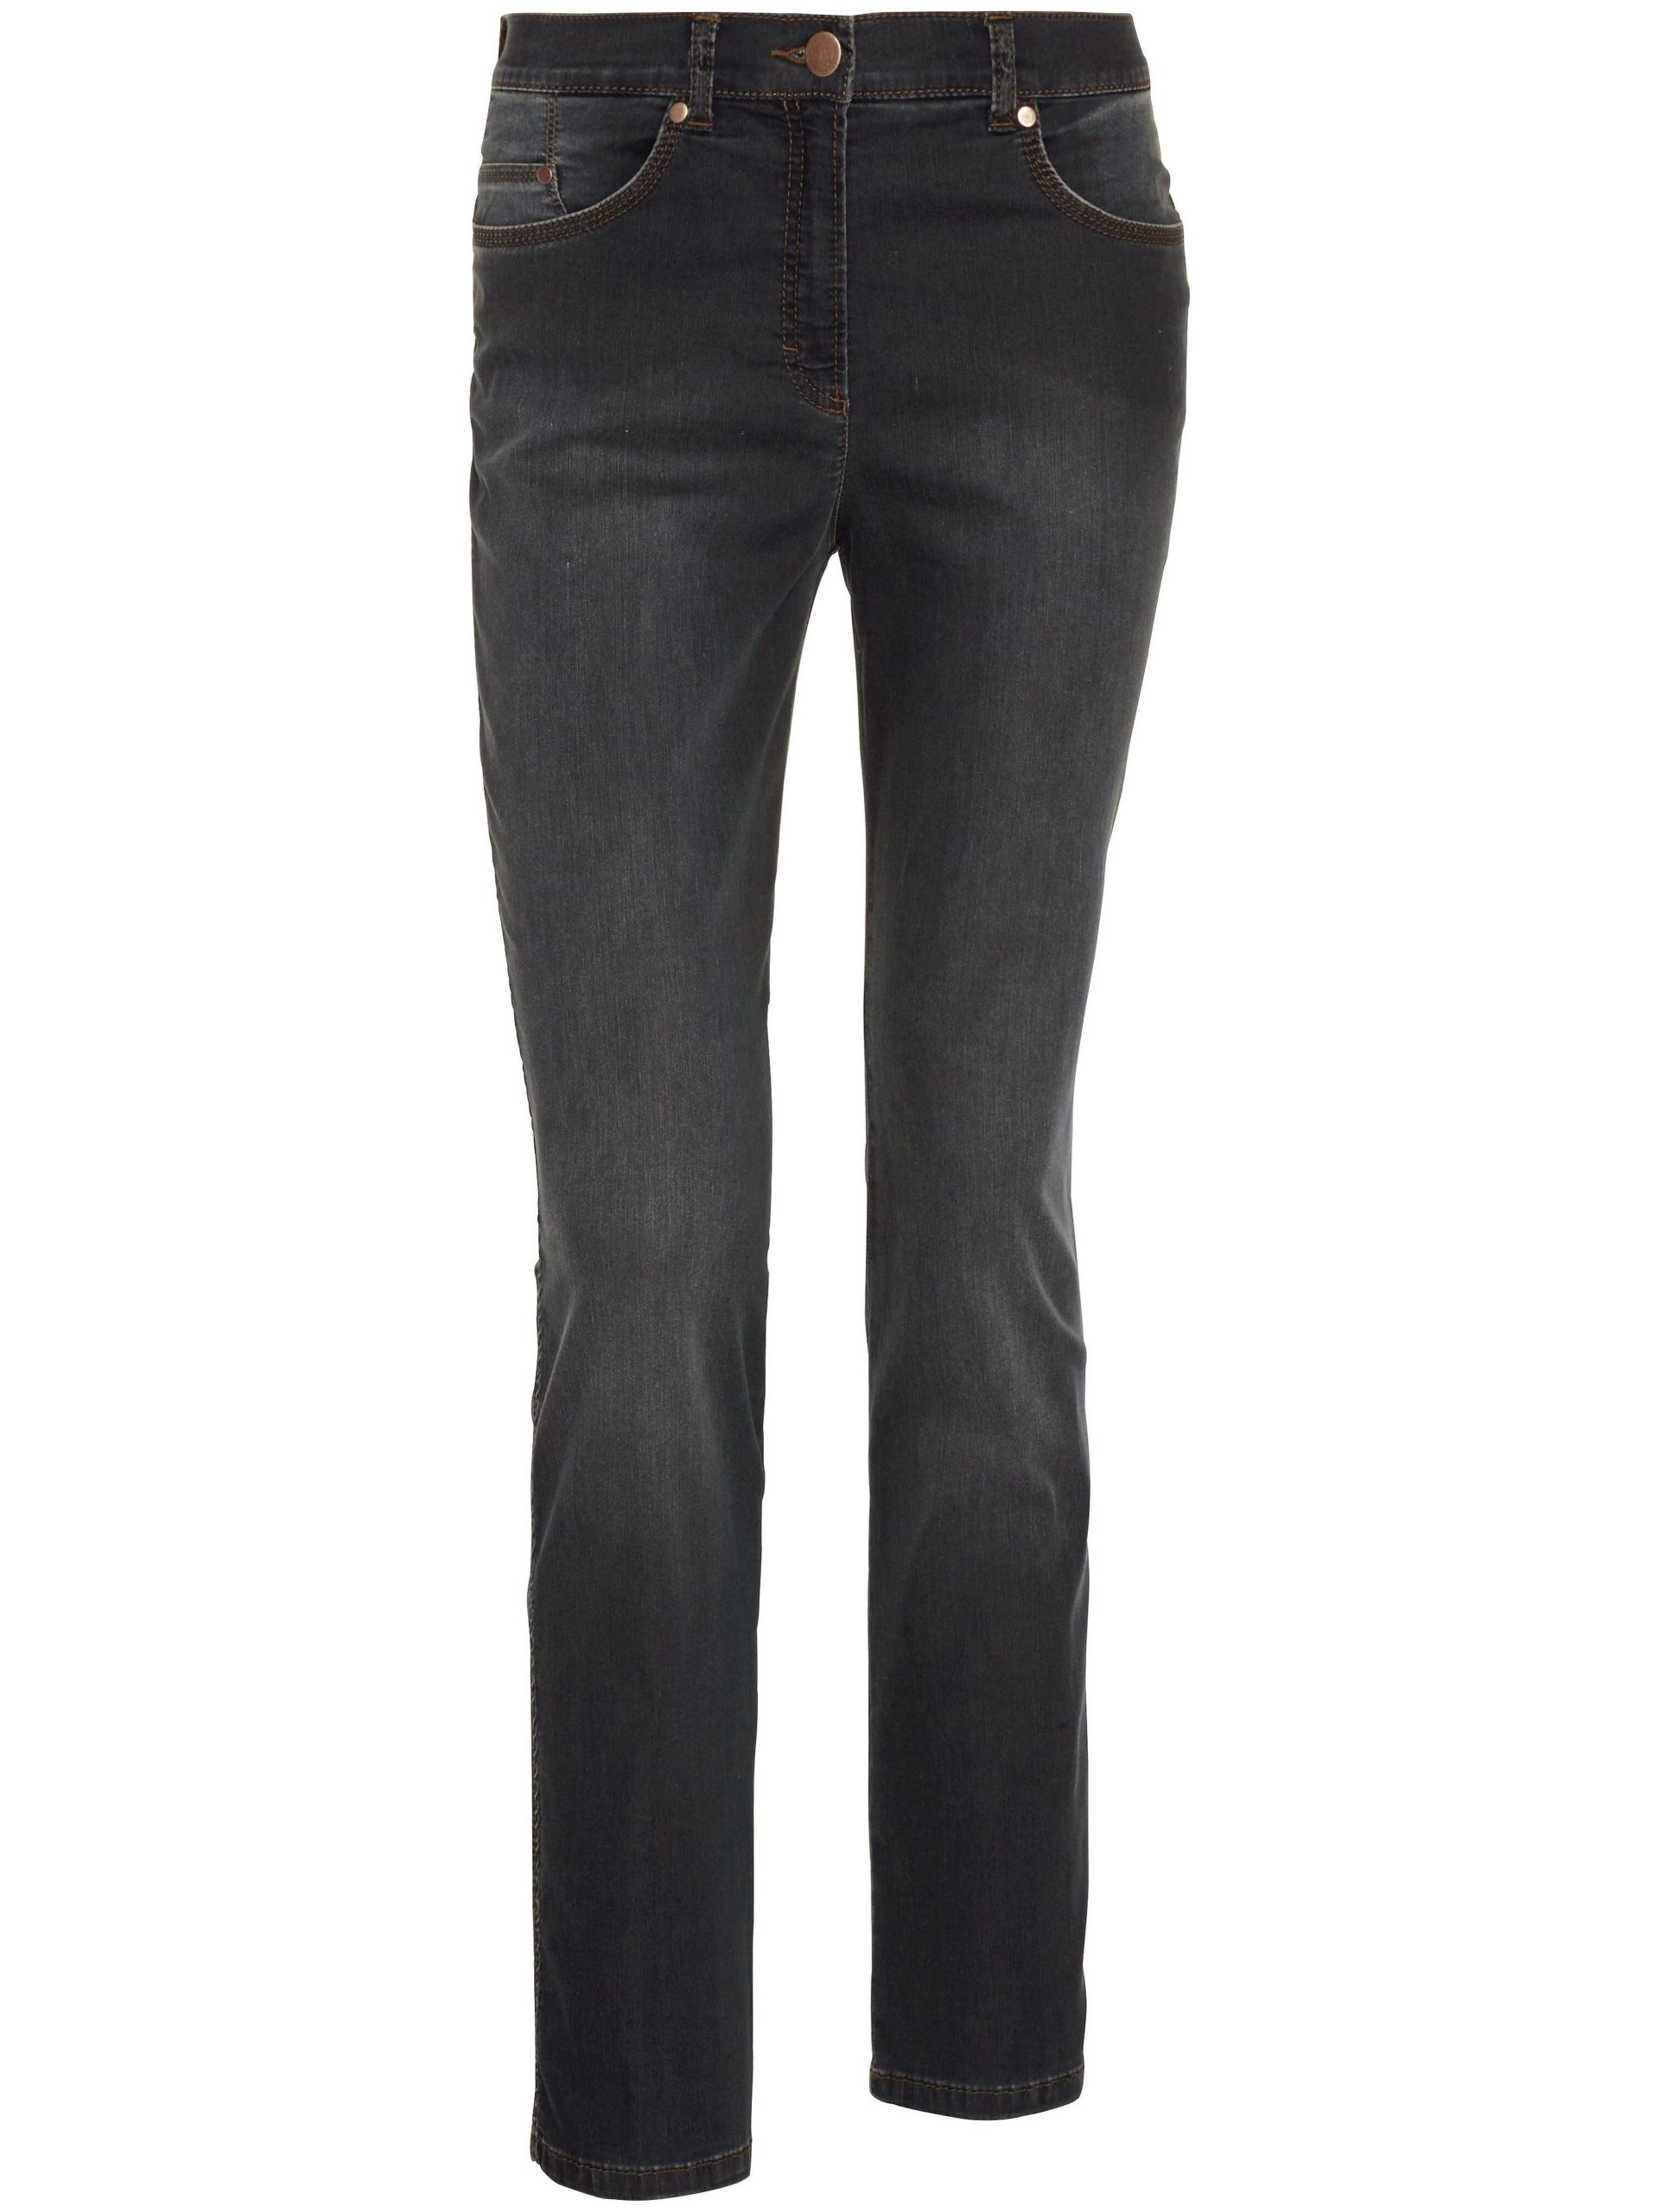 Corrigerende Proform S Super Slim-jeans model Lea Van Raphaela by Brax zwart Kopen